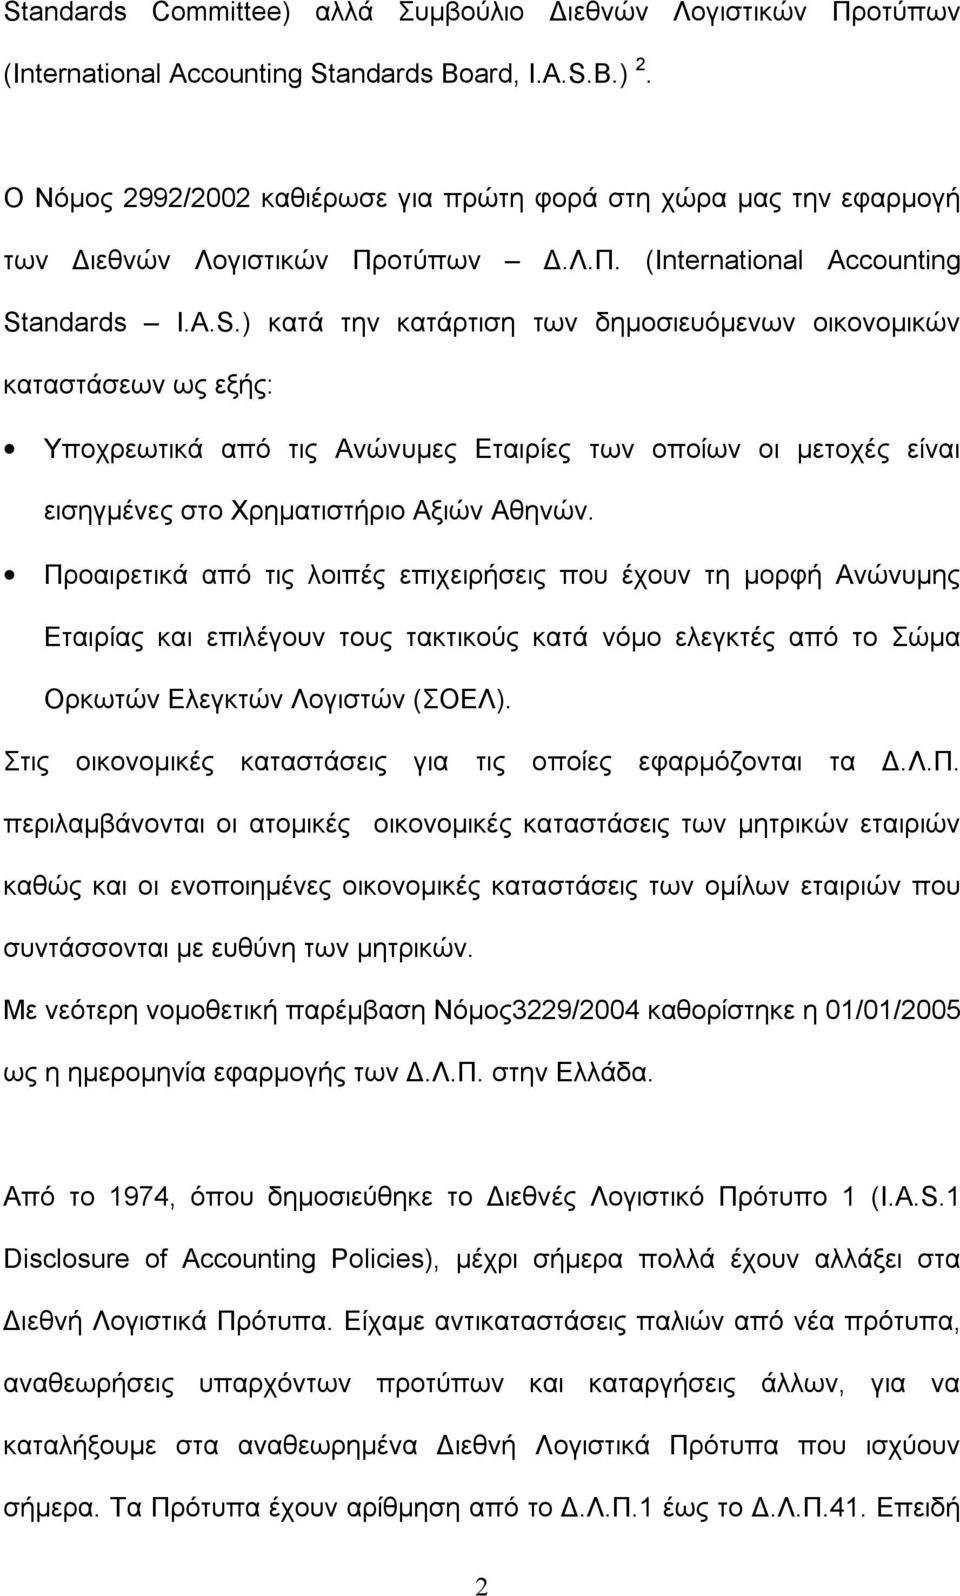 andards I.A.S.) κατά την κατάρτιση των δημοσιευόμενων οικονομικών καταστάσεων ως εξής: Υποχρεωτικά από τις Ανώνυμες Εταιρίες των οποίων οι μετοχές είναι εισηγμένες στο Χρηματιστήριο Αξιών Αθηνών.